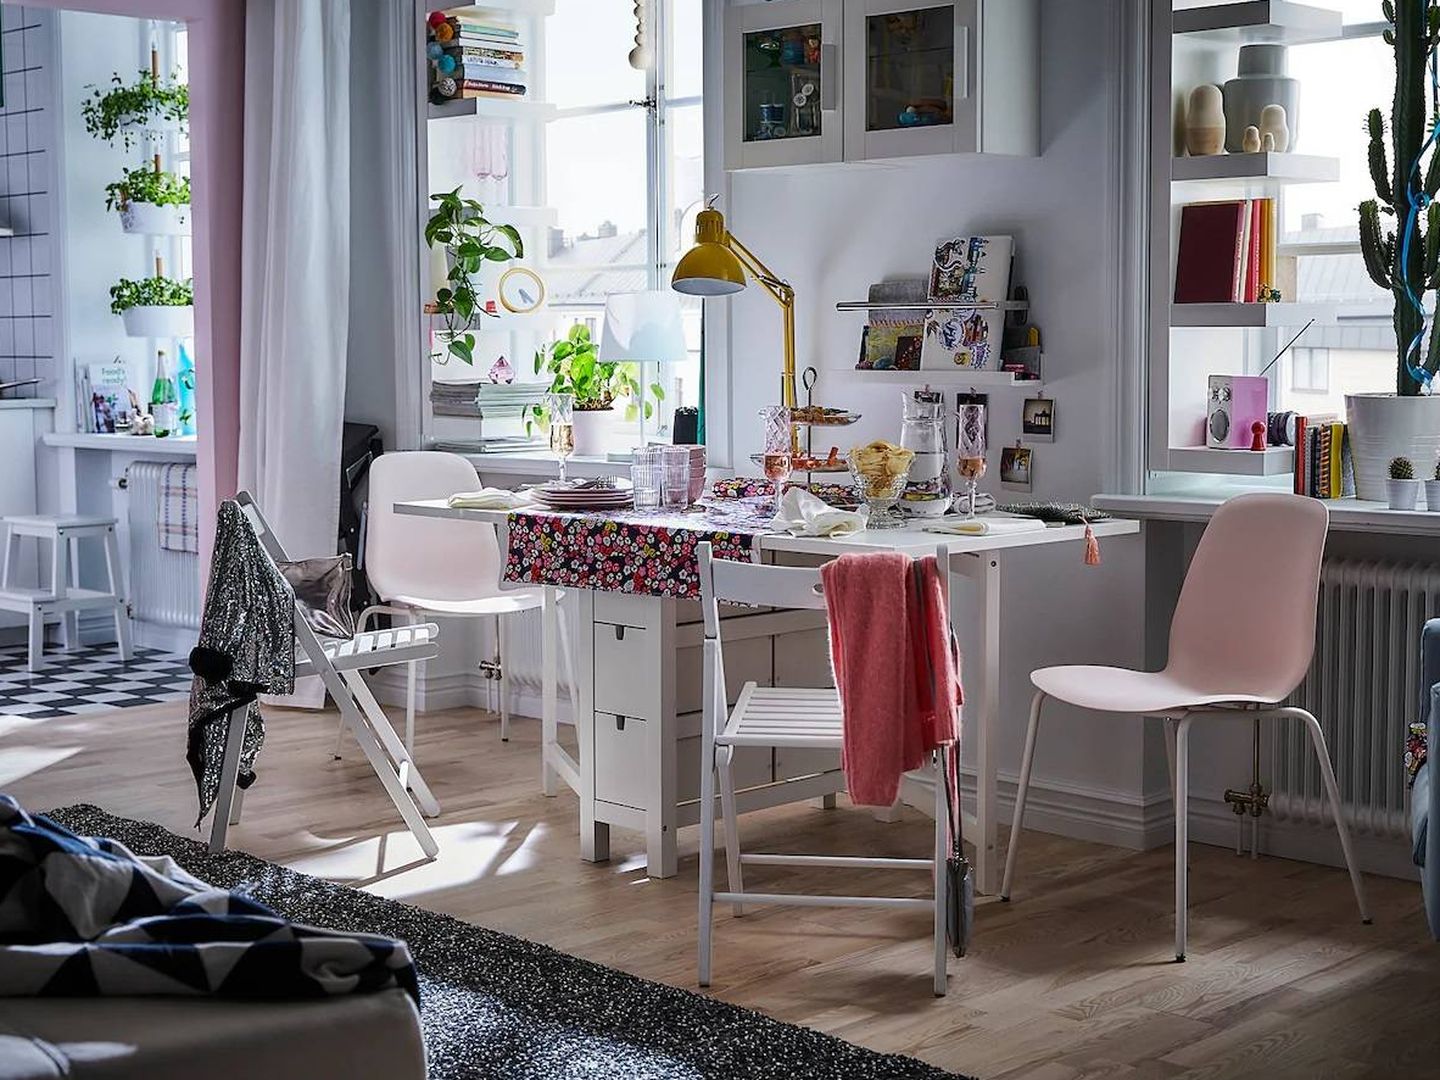 La mesa de Ikea perfecta para espacios pequeños. (Cortesía)